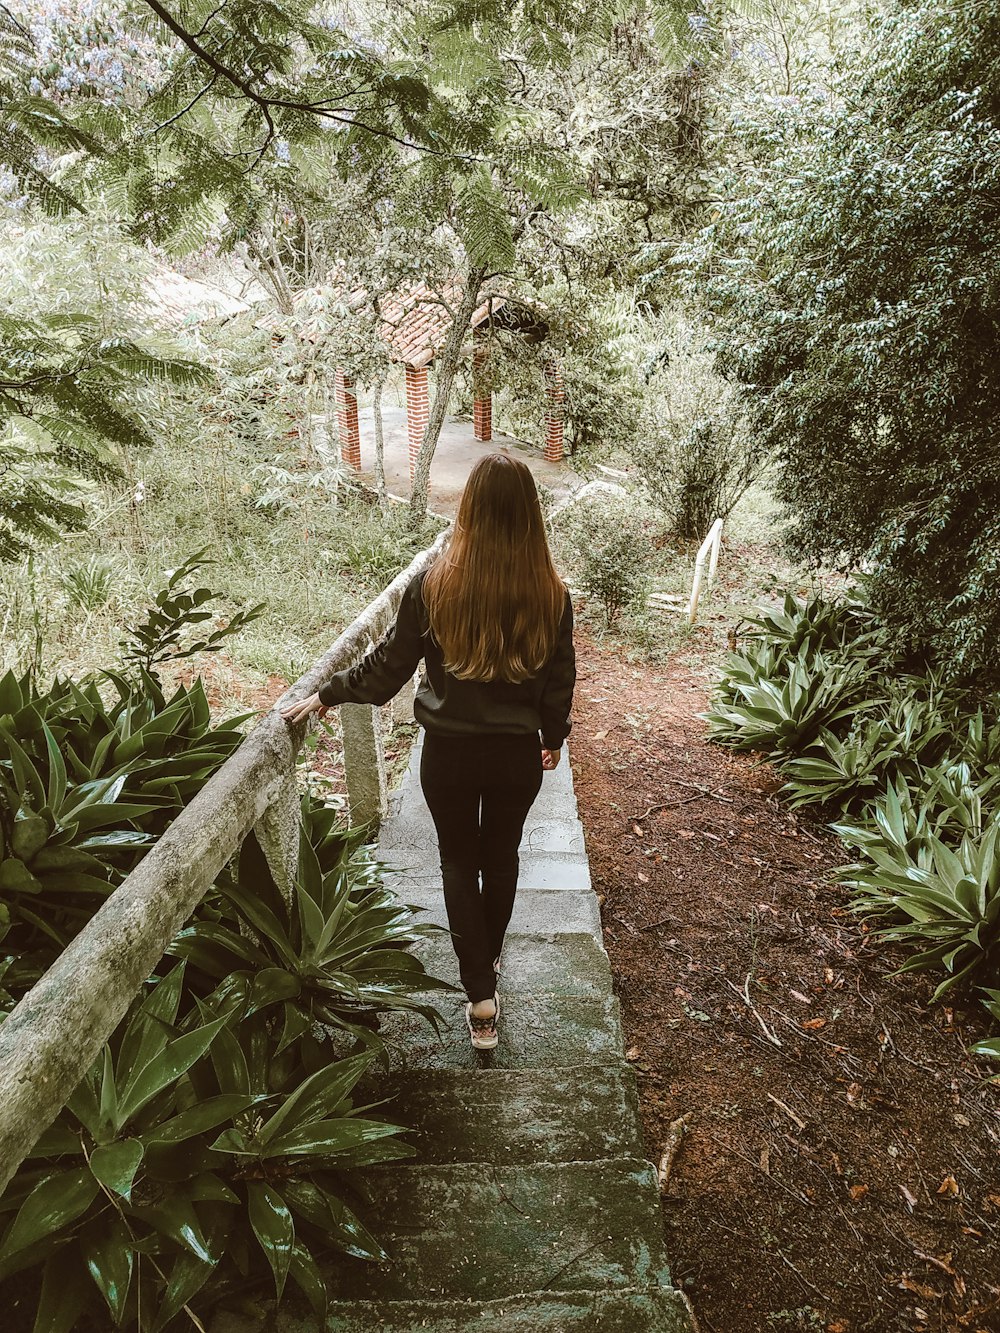 검은 긴 소매 셔츠와 검은 바지를 입은 여자가 녹색 식물 사이의 길을 걷고 있다